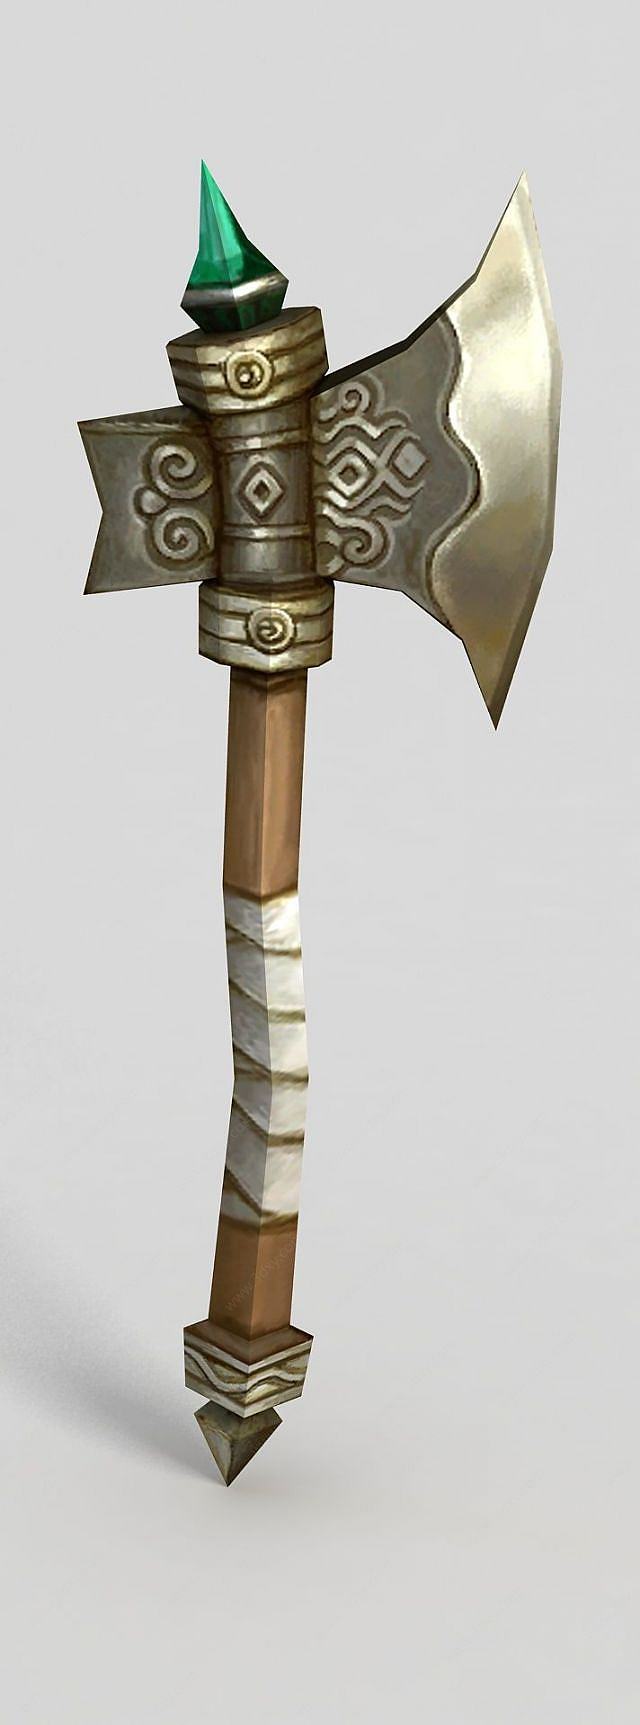 龙之谷斧头锤子武器3D模型